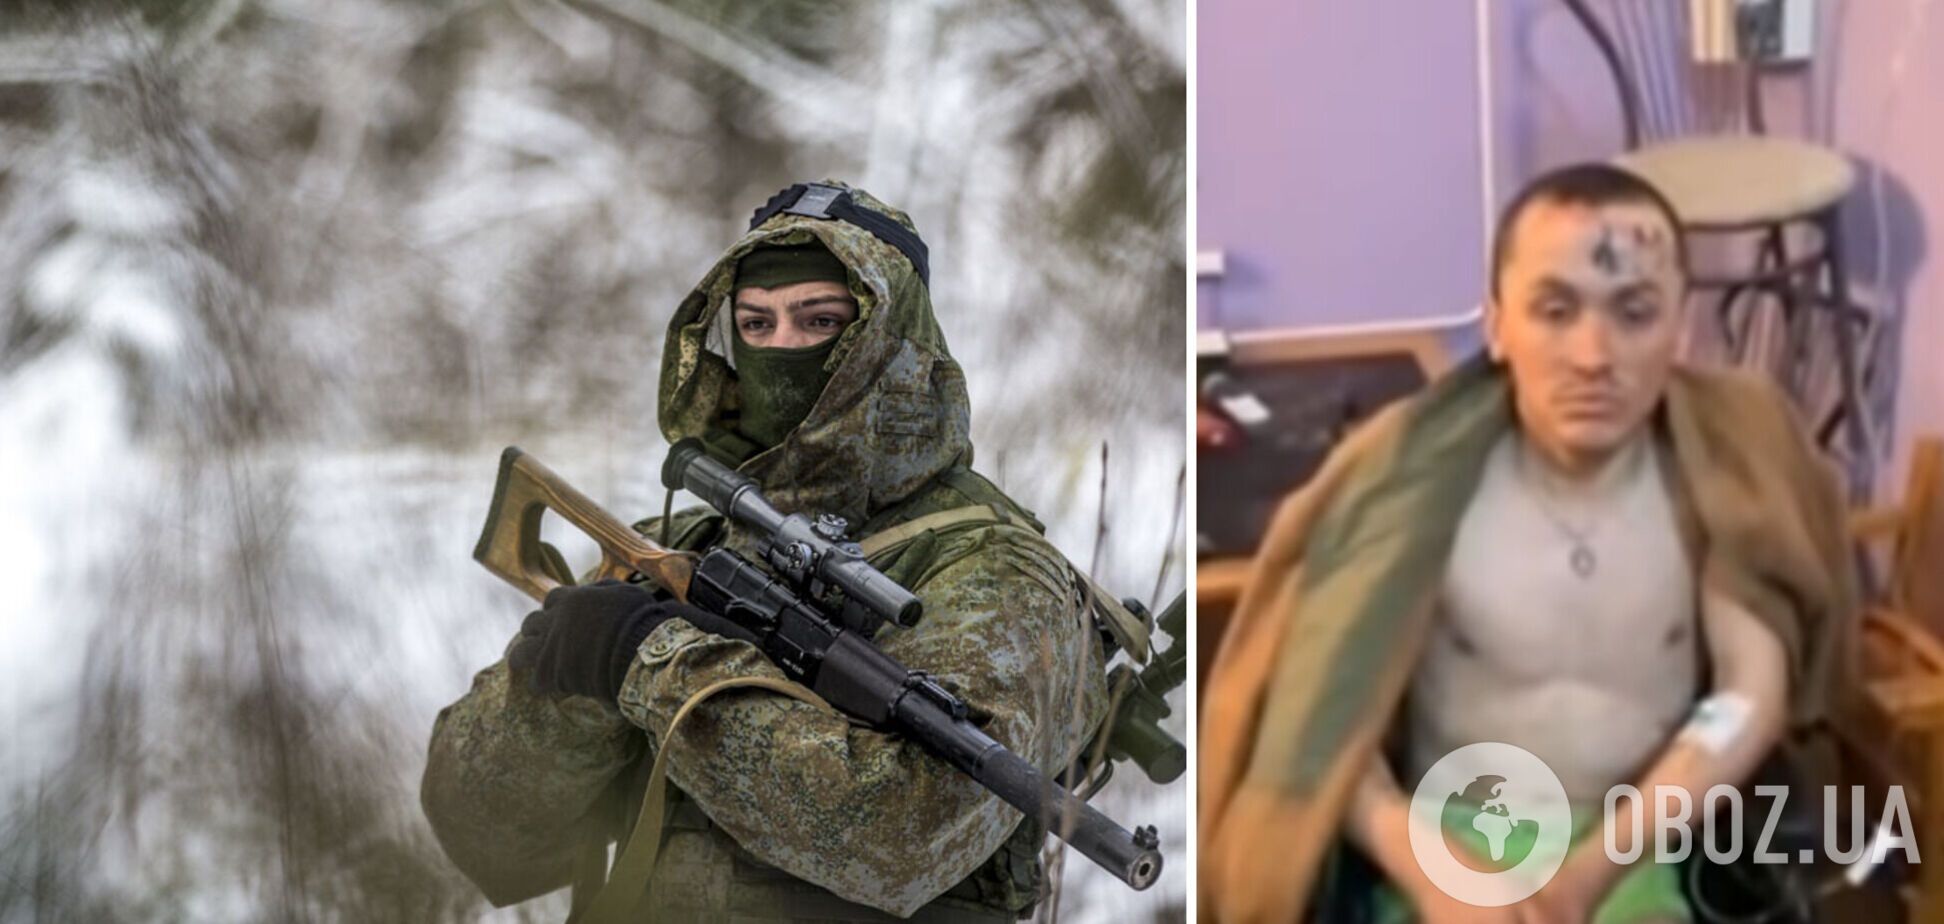 ВСУ взяли в плен командира отделения российских снайперов. Видео 18+